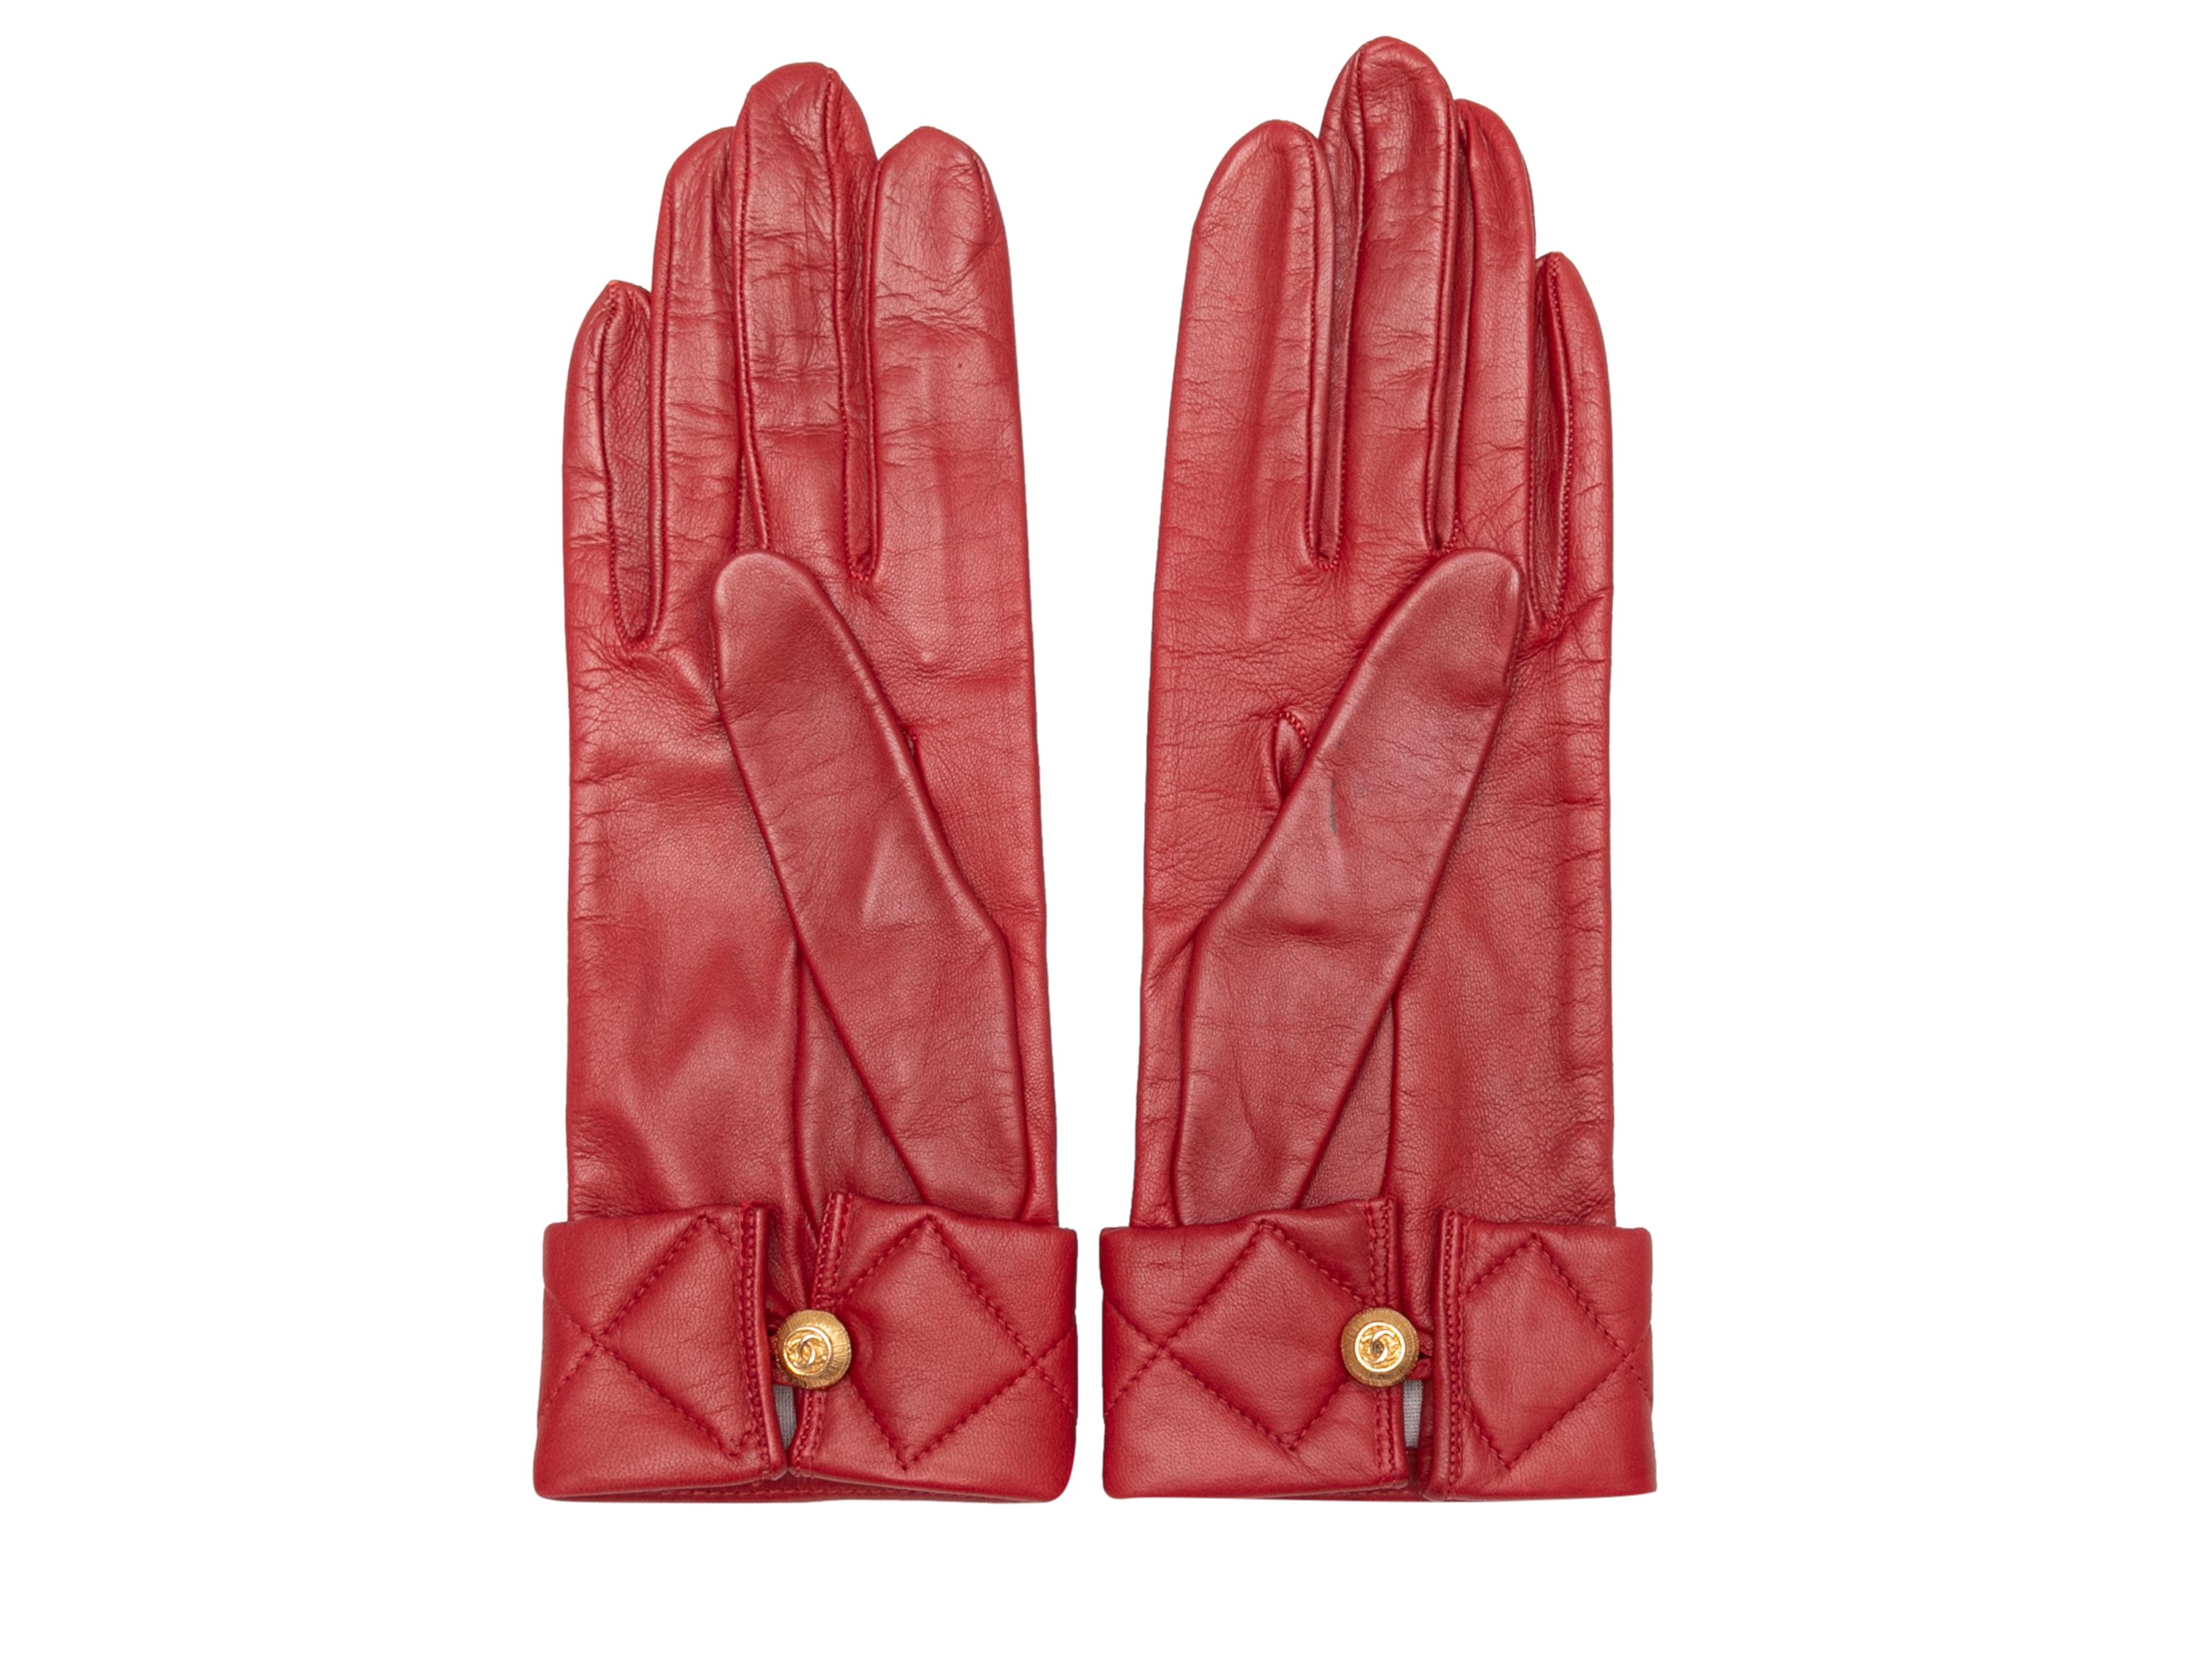 Rote Vintage-Lederhandschuhe von Chanel. Gesteppte Manschetten. Goldfarbene Knopfverschlüsse an den Handgelenken. 3,25